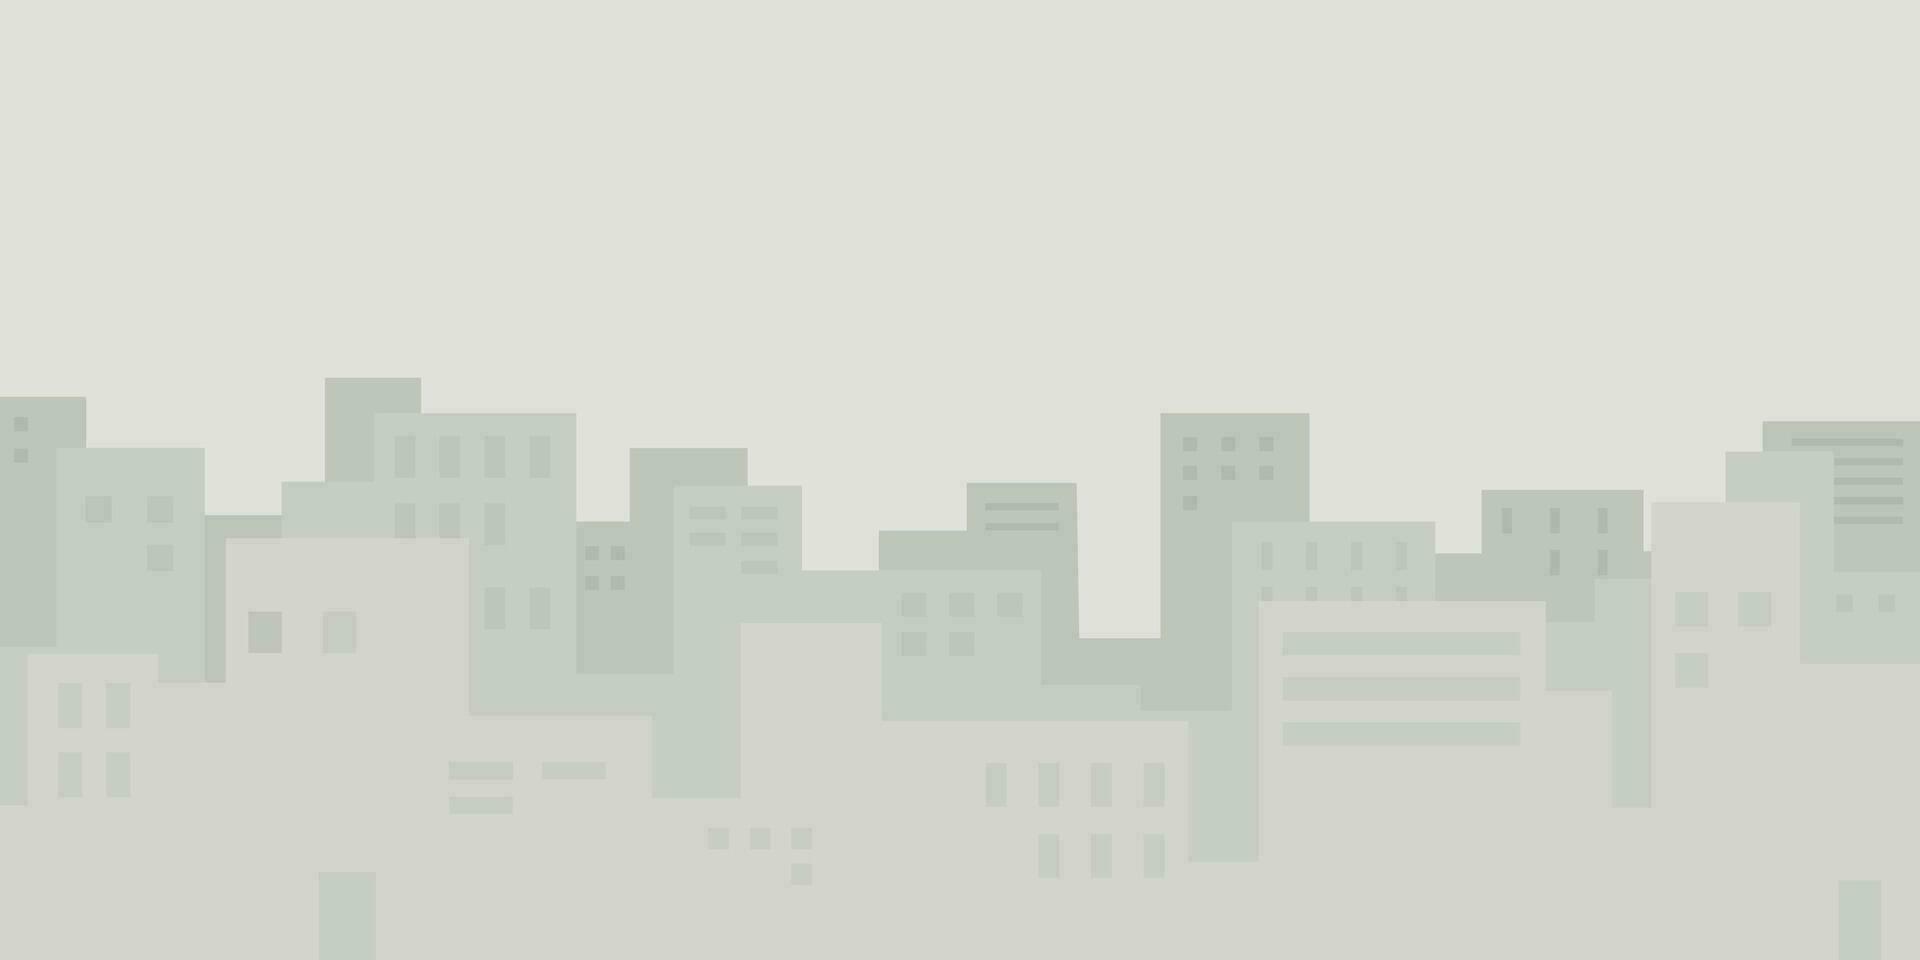 astratto paesaggio urbano minimo stile su leggero grigio sfondo avere vuoto spazio per qualunque formulazione pubblicità. paesaggio di grattacieli geometrico vettore illustrazione.